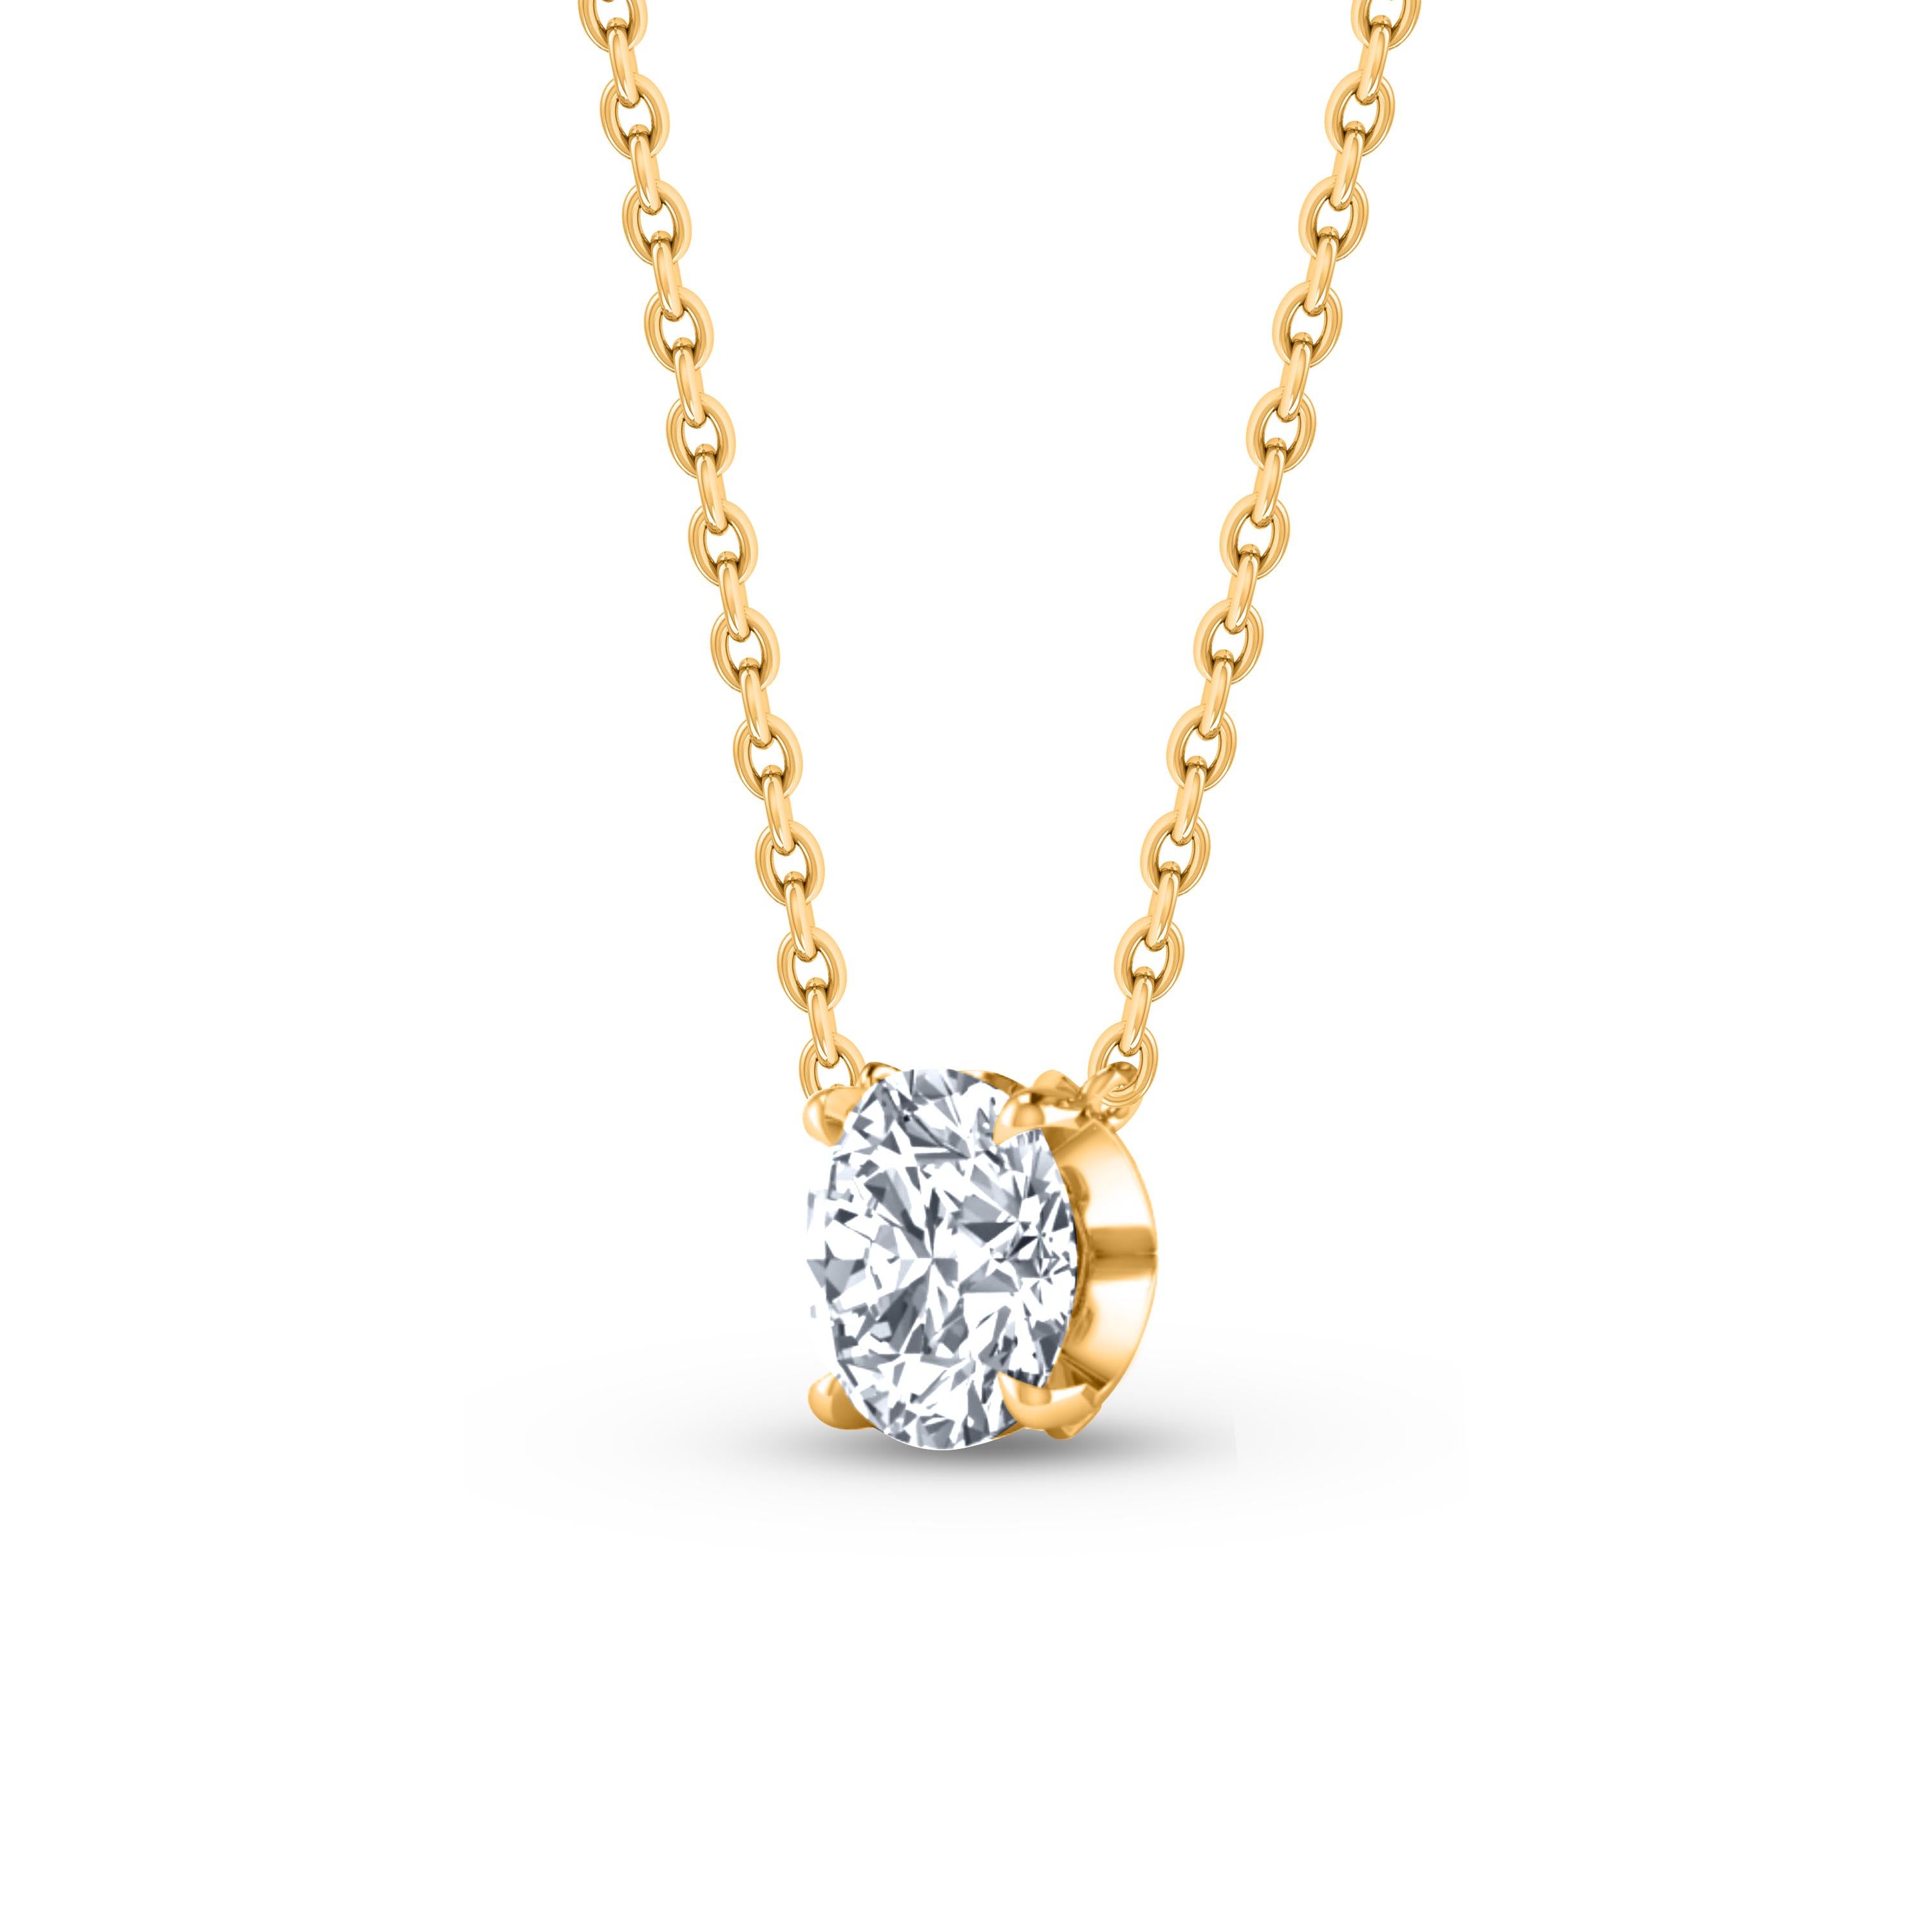  Dieses Solitär-Diamantencollier besteht aus einem einzelnen Diamanten im Brillantschliff von 0,27 Karat in Zackenfassung aus 18 KT Gelbgold. Diese elegante Halskette umfasst eine 20-Zoll-Kabelkette mit Verlängerungen bei 16 und 18 Zoll. Diese